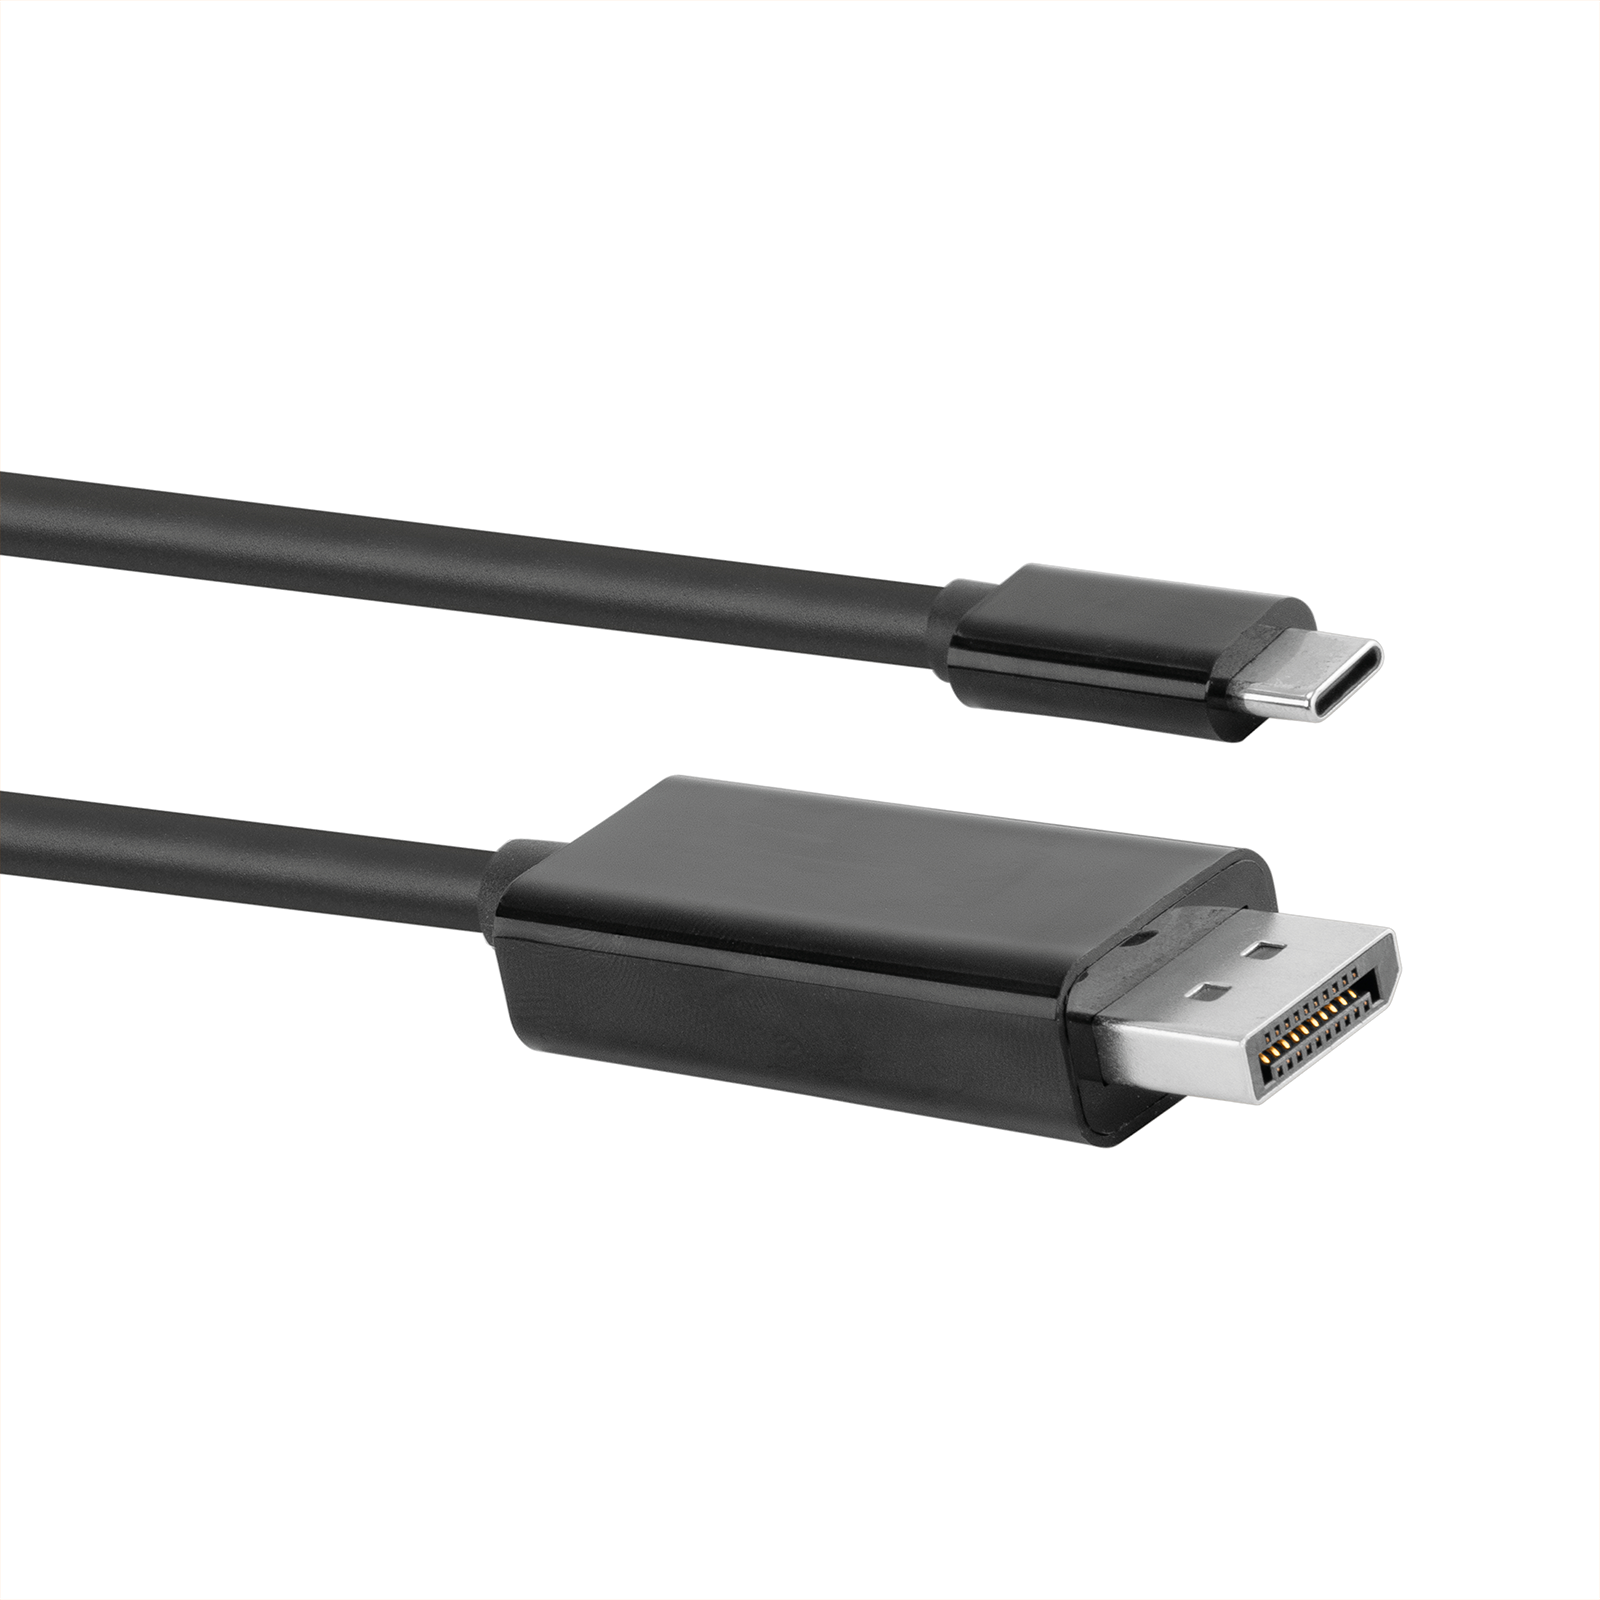 Adaptador HDMI a USB-C Gris de Gravity